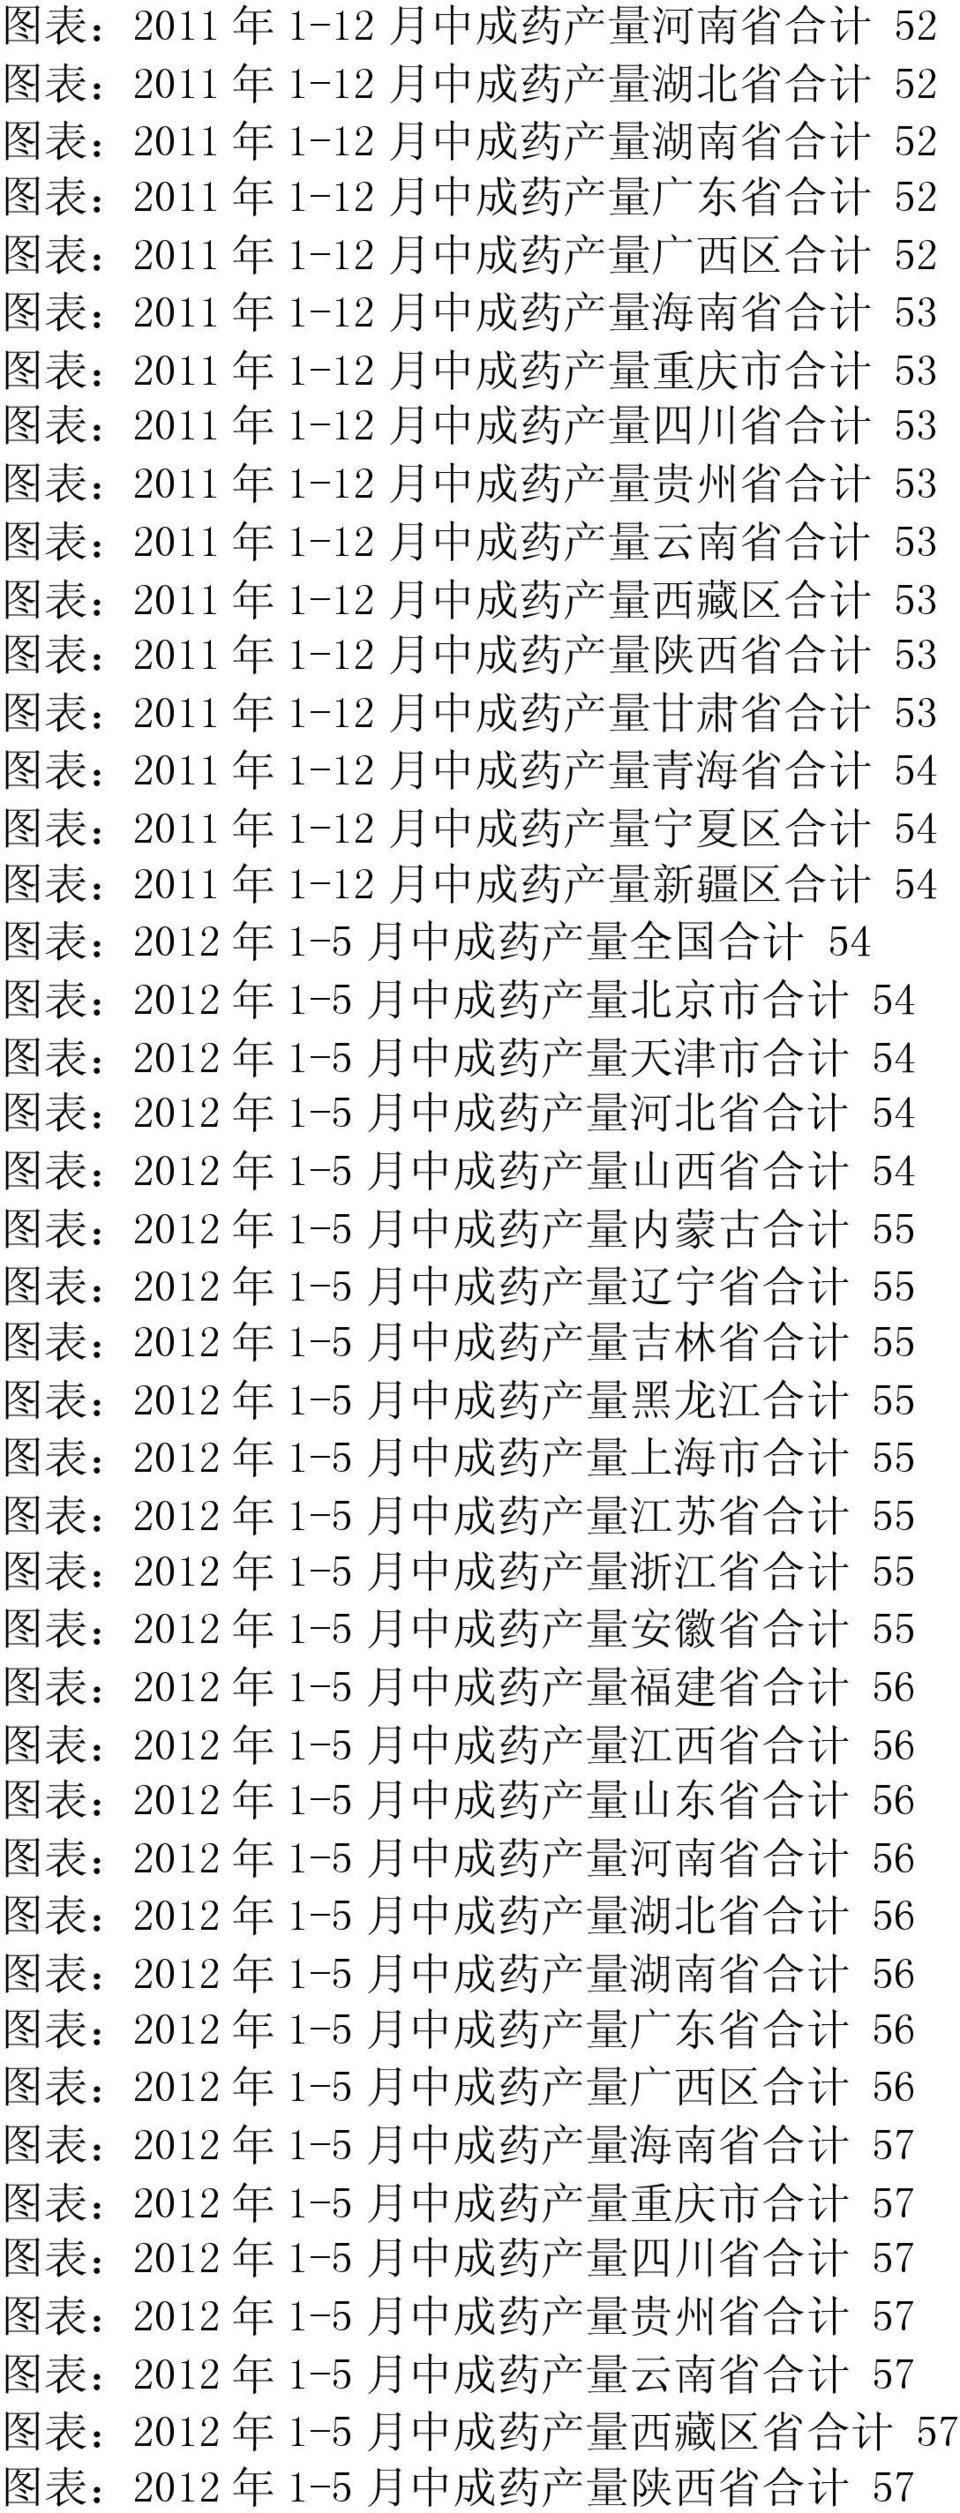 成 药 产 量 云 南 省 合 计 53 图 表 :2011 年 1-12 月 中 成 药 产 量 西 藏 区 合 计 53 图 表 :2011 年 1-12 月 中 成 药 产 量 陕 西 省 合 计 53 图 表 :2011 年 1-12 月 中 成 药 产 量 甘 肃 省 合 计 53 图 表 :2011 年 1-12 月 中 成 药 产 量 青 海 省 合 计 54 图 表 :2011